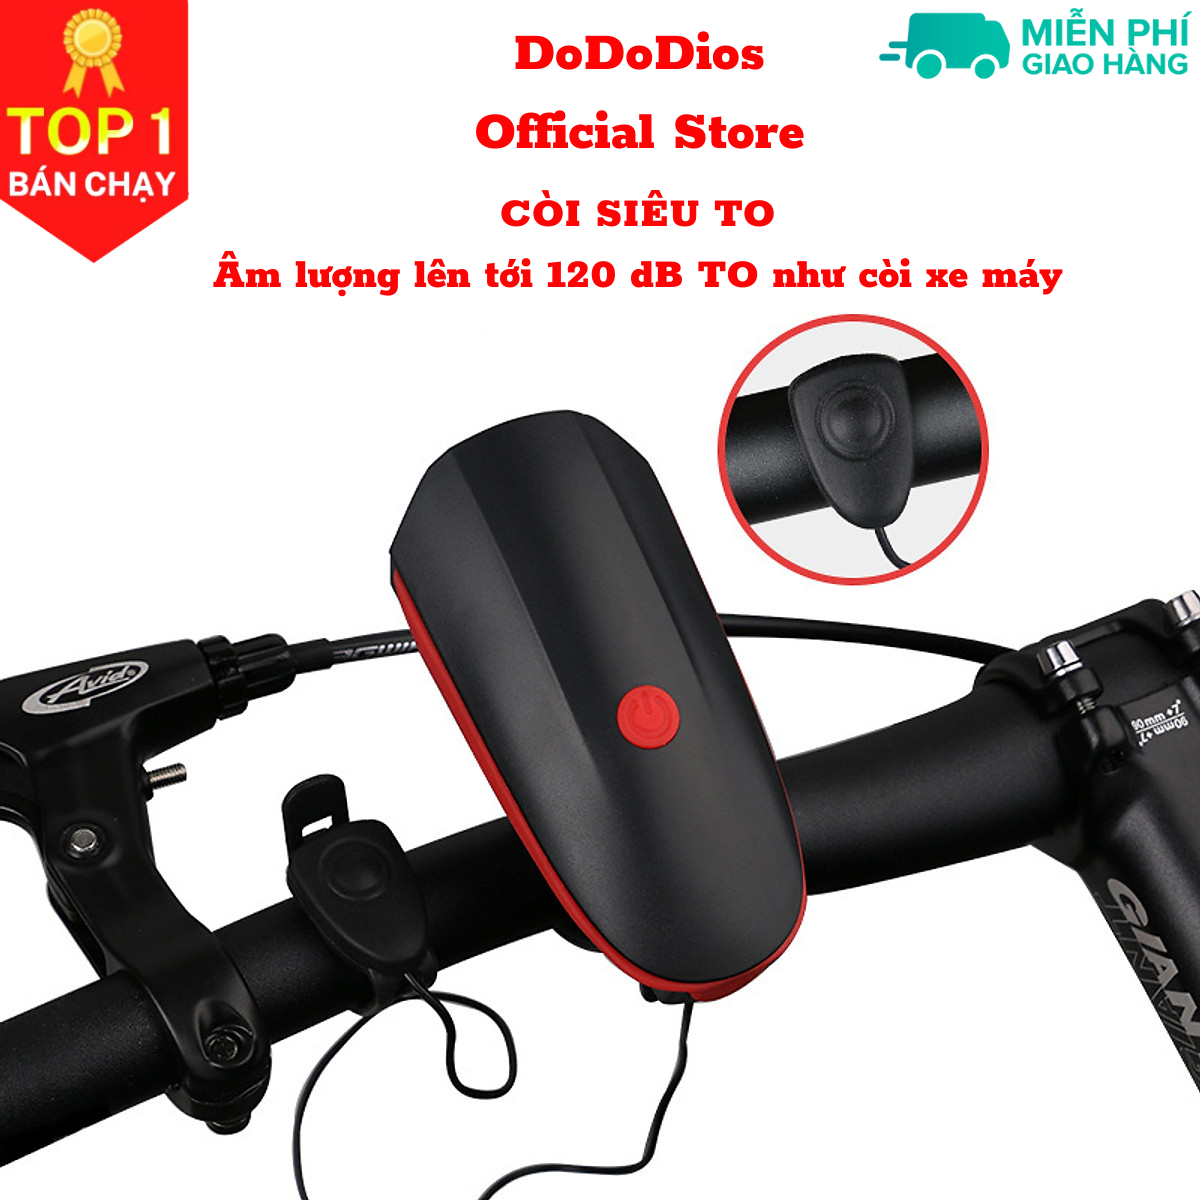 Hình ảnh Đèn xe đạp thể thao DoDoDios siêu sáng có còi pin sạc usb led T6 chống nước - Đèn còi xe đạp có 3 chế độ sáng còi to